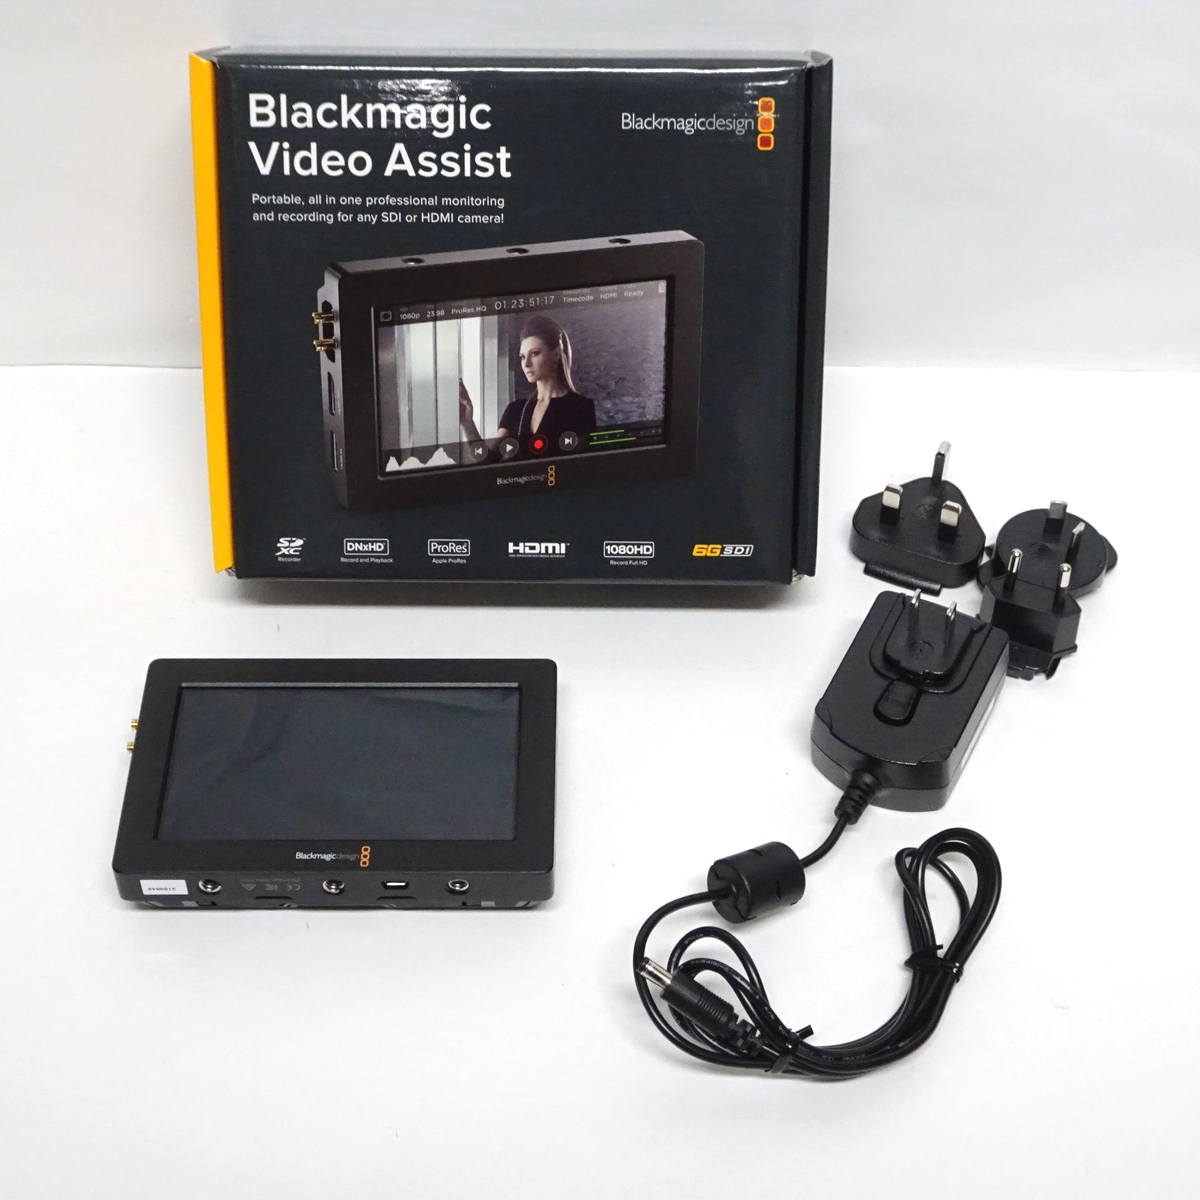 【中古】Blackmagic Design Video Assist AVIDAS5HD モニター一体型ポータブルレコーダー【愛知発送1】